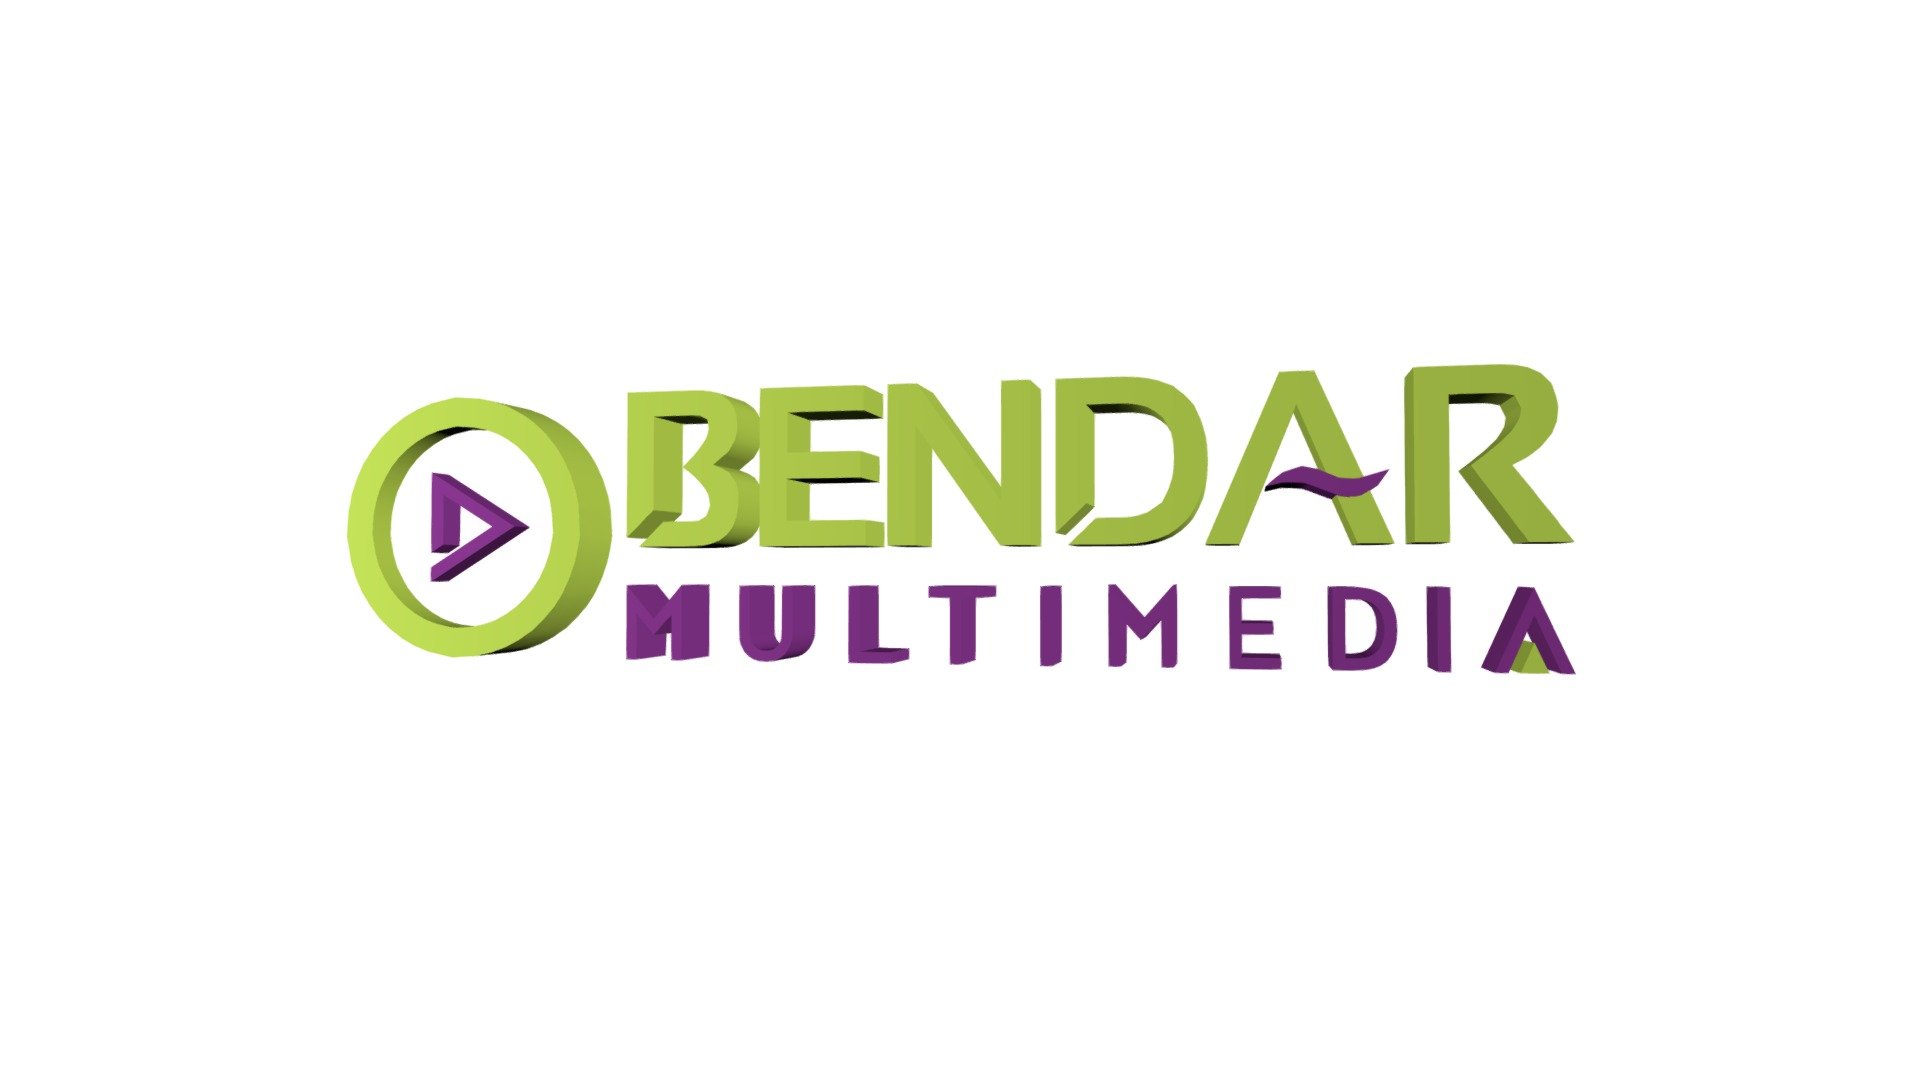 Bendar Multimedia logo